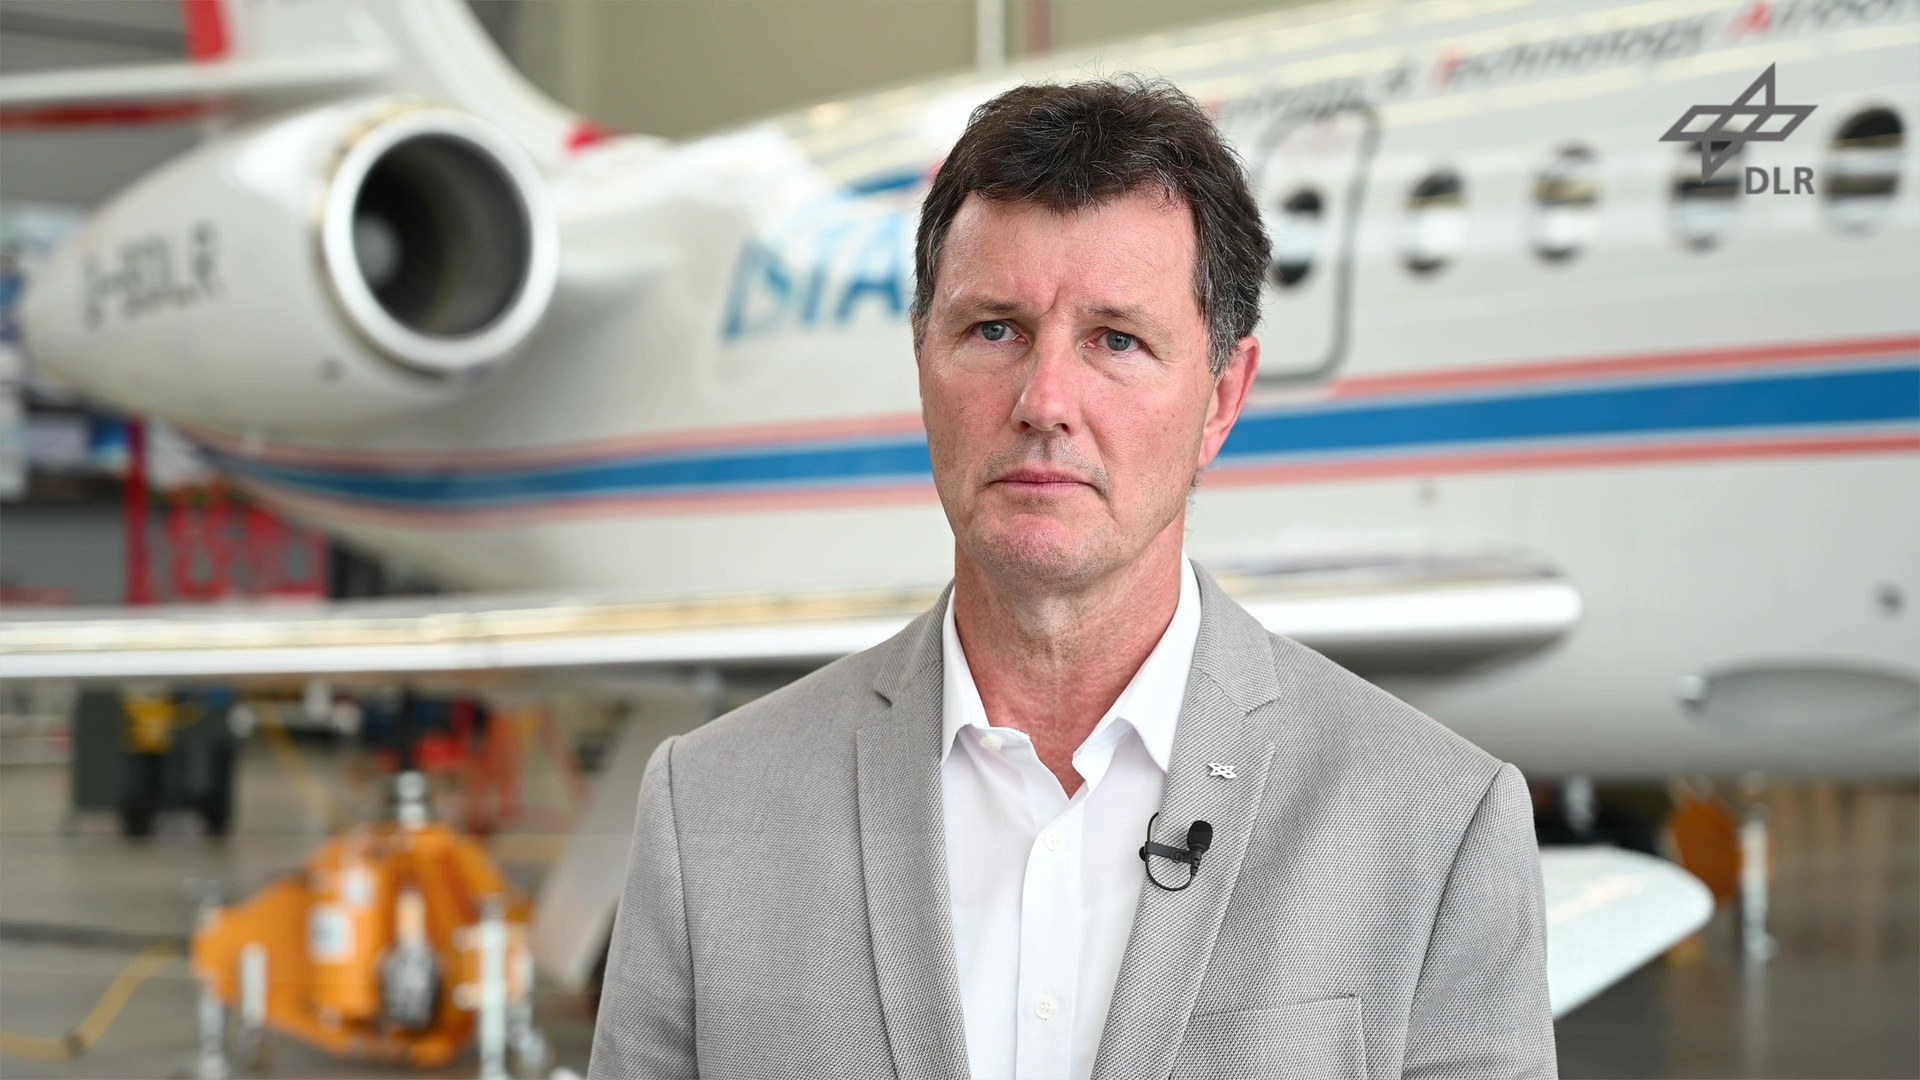 Standbild – Video: Markus Firscher zur DLR-Luftfahrtstrategie